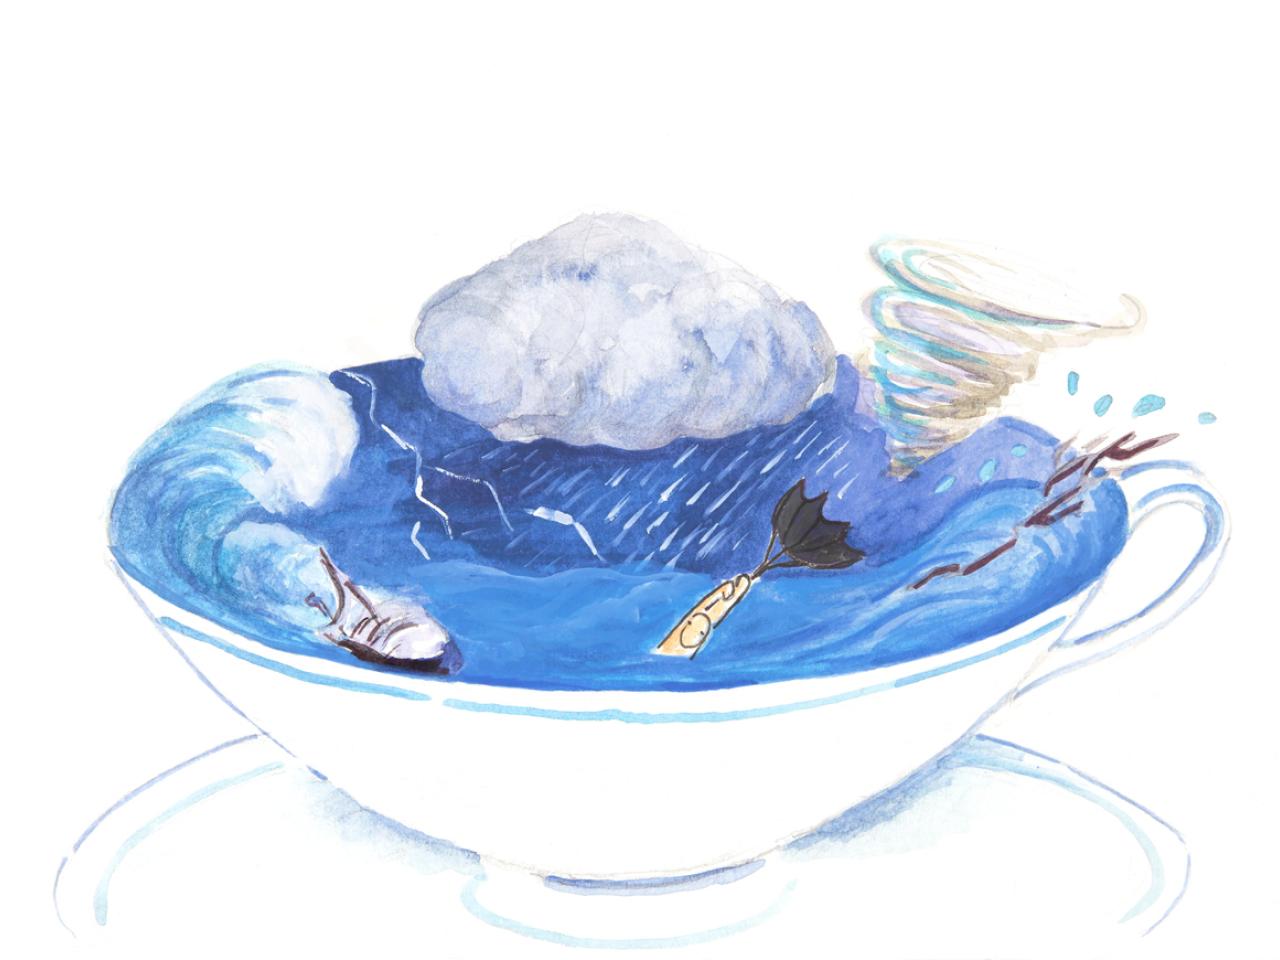 Teacup with polar vortex inside